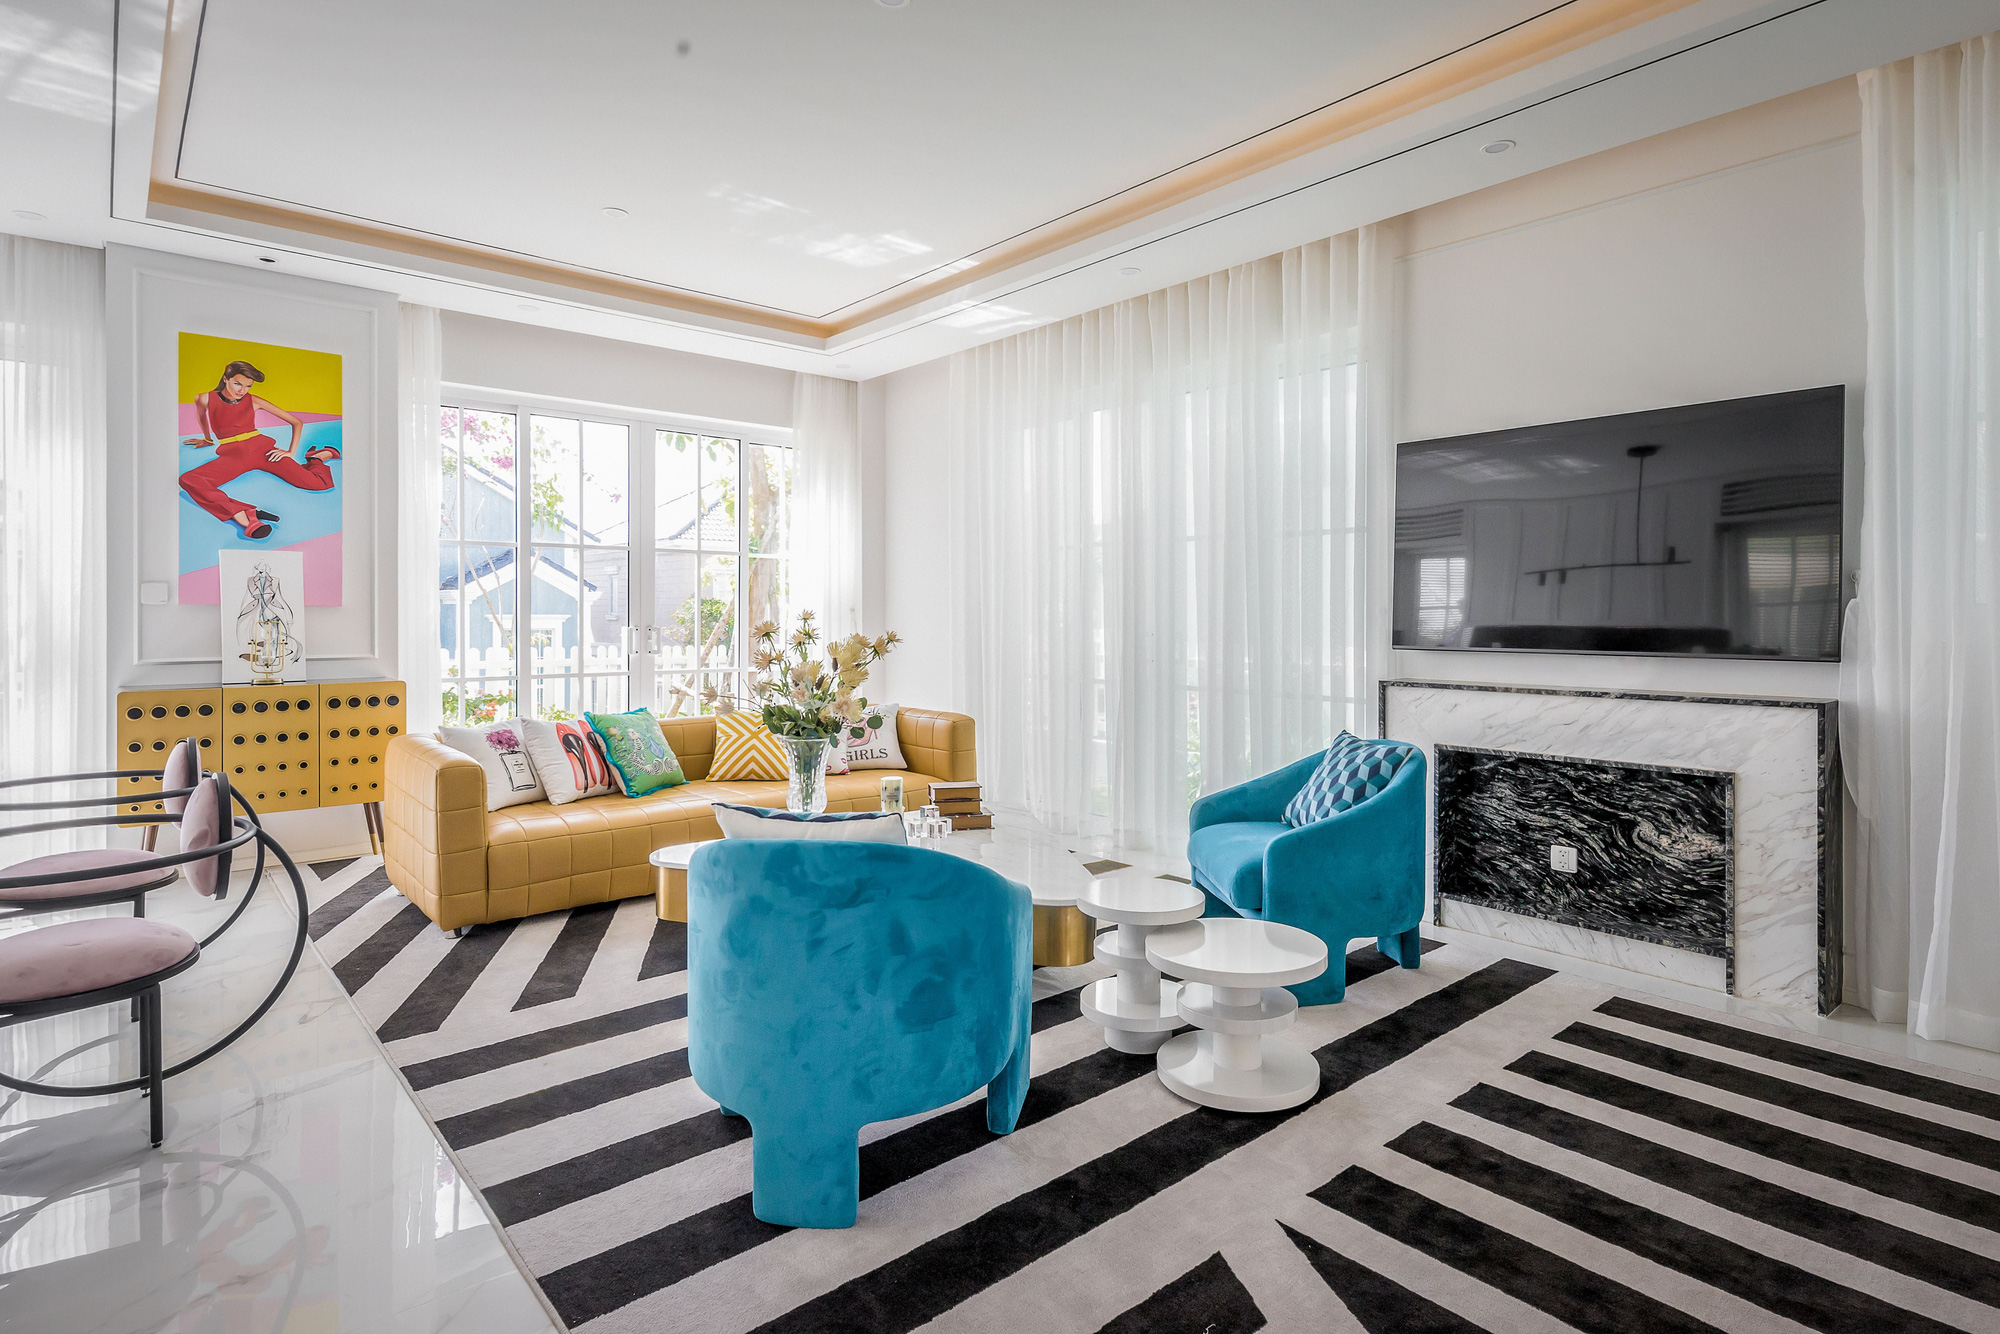 Căn villa 280m² trang bị nội thất giá 3 tỷ đẹp như bản giao hưởng nghệ thuật đương đại bên bờ biển Phan Thiết - Ảnh 8.